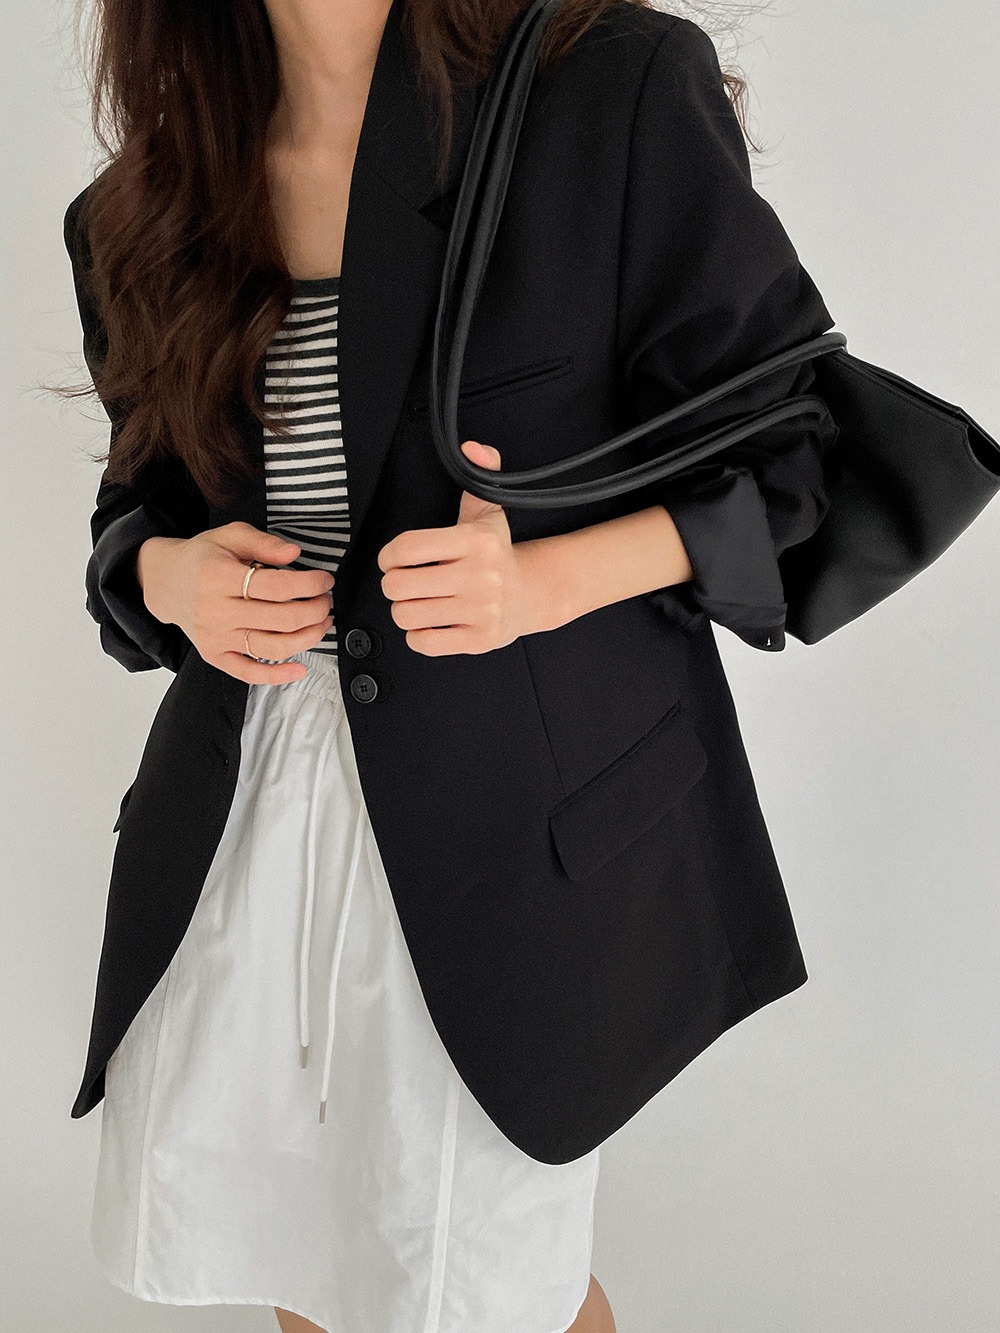 루블린 재킷 (2color)* 세일상품은 제한된 수량으로, 신중한 구매 부탁드립니다. *